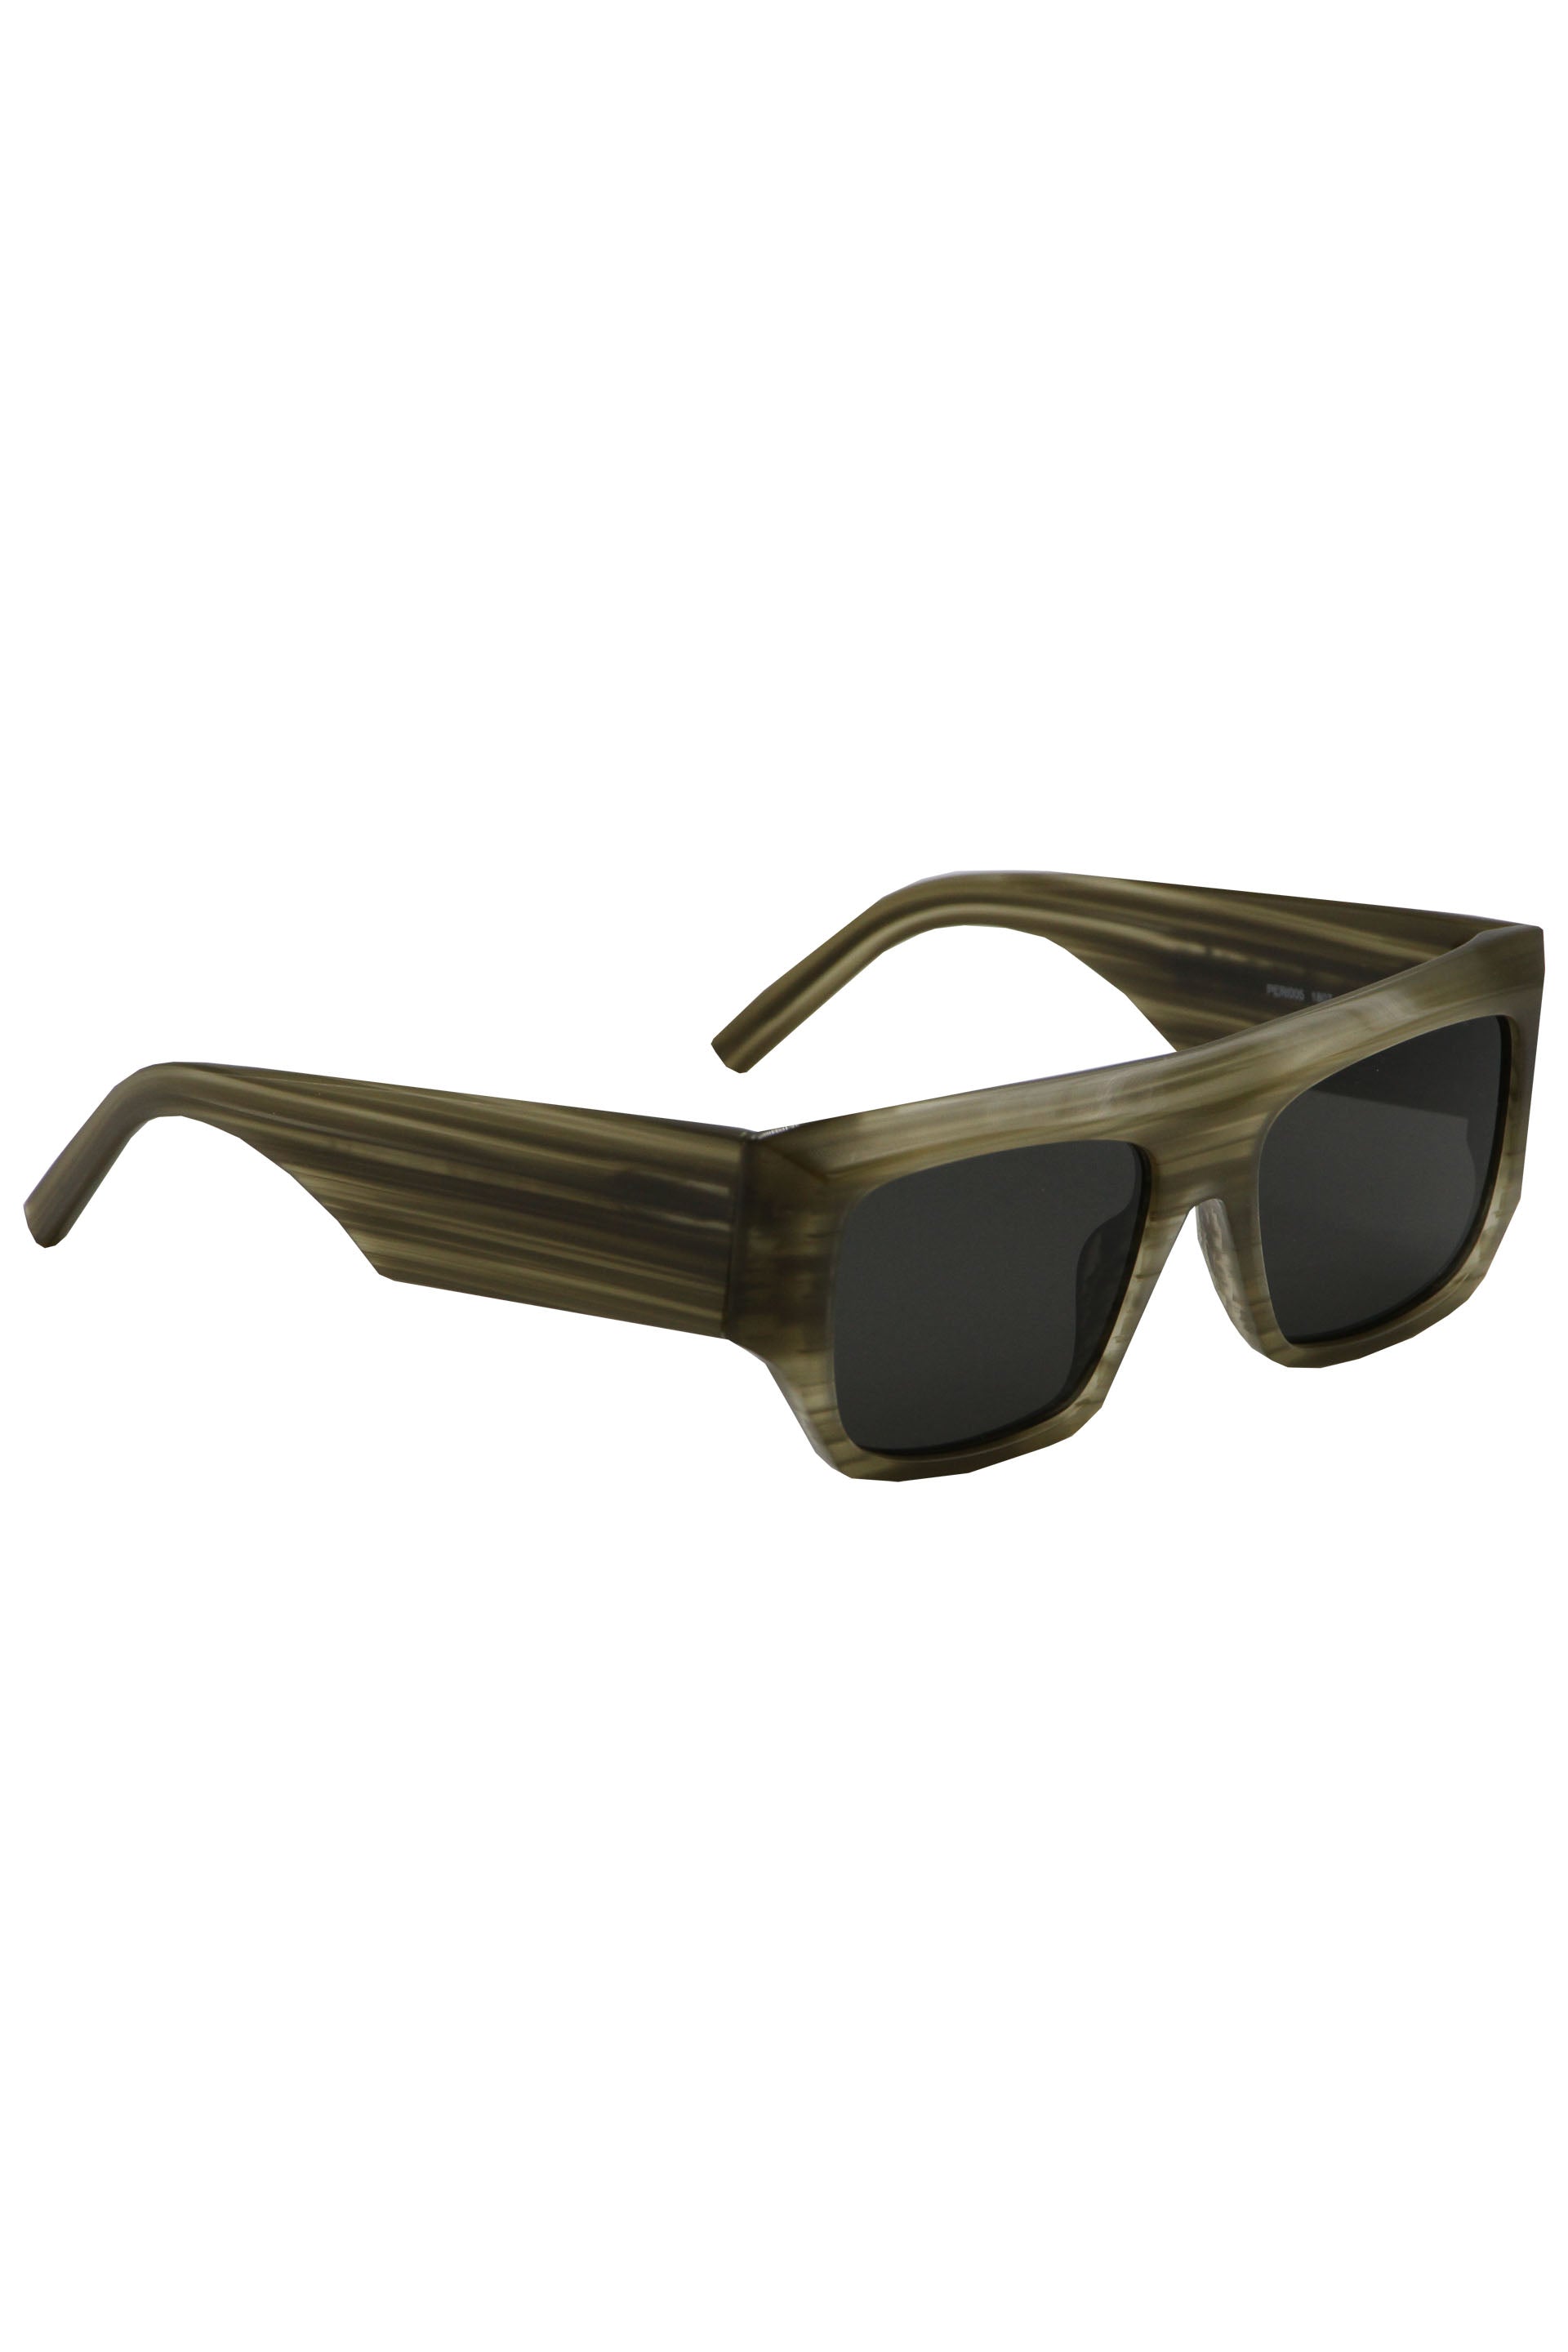 Palm-Angels-OUTLET-SALE-Blanca-rectangular-frame-sunglasses-Sonnenbrille-TU-ARCHIVE-COLLECTION-3_6f379c6e-ccf2-4788-862d-d9e26159dacf.jpg